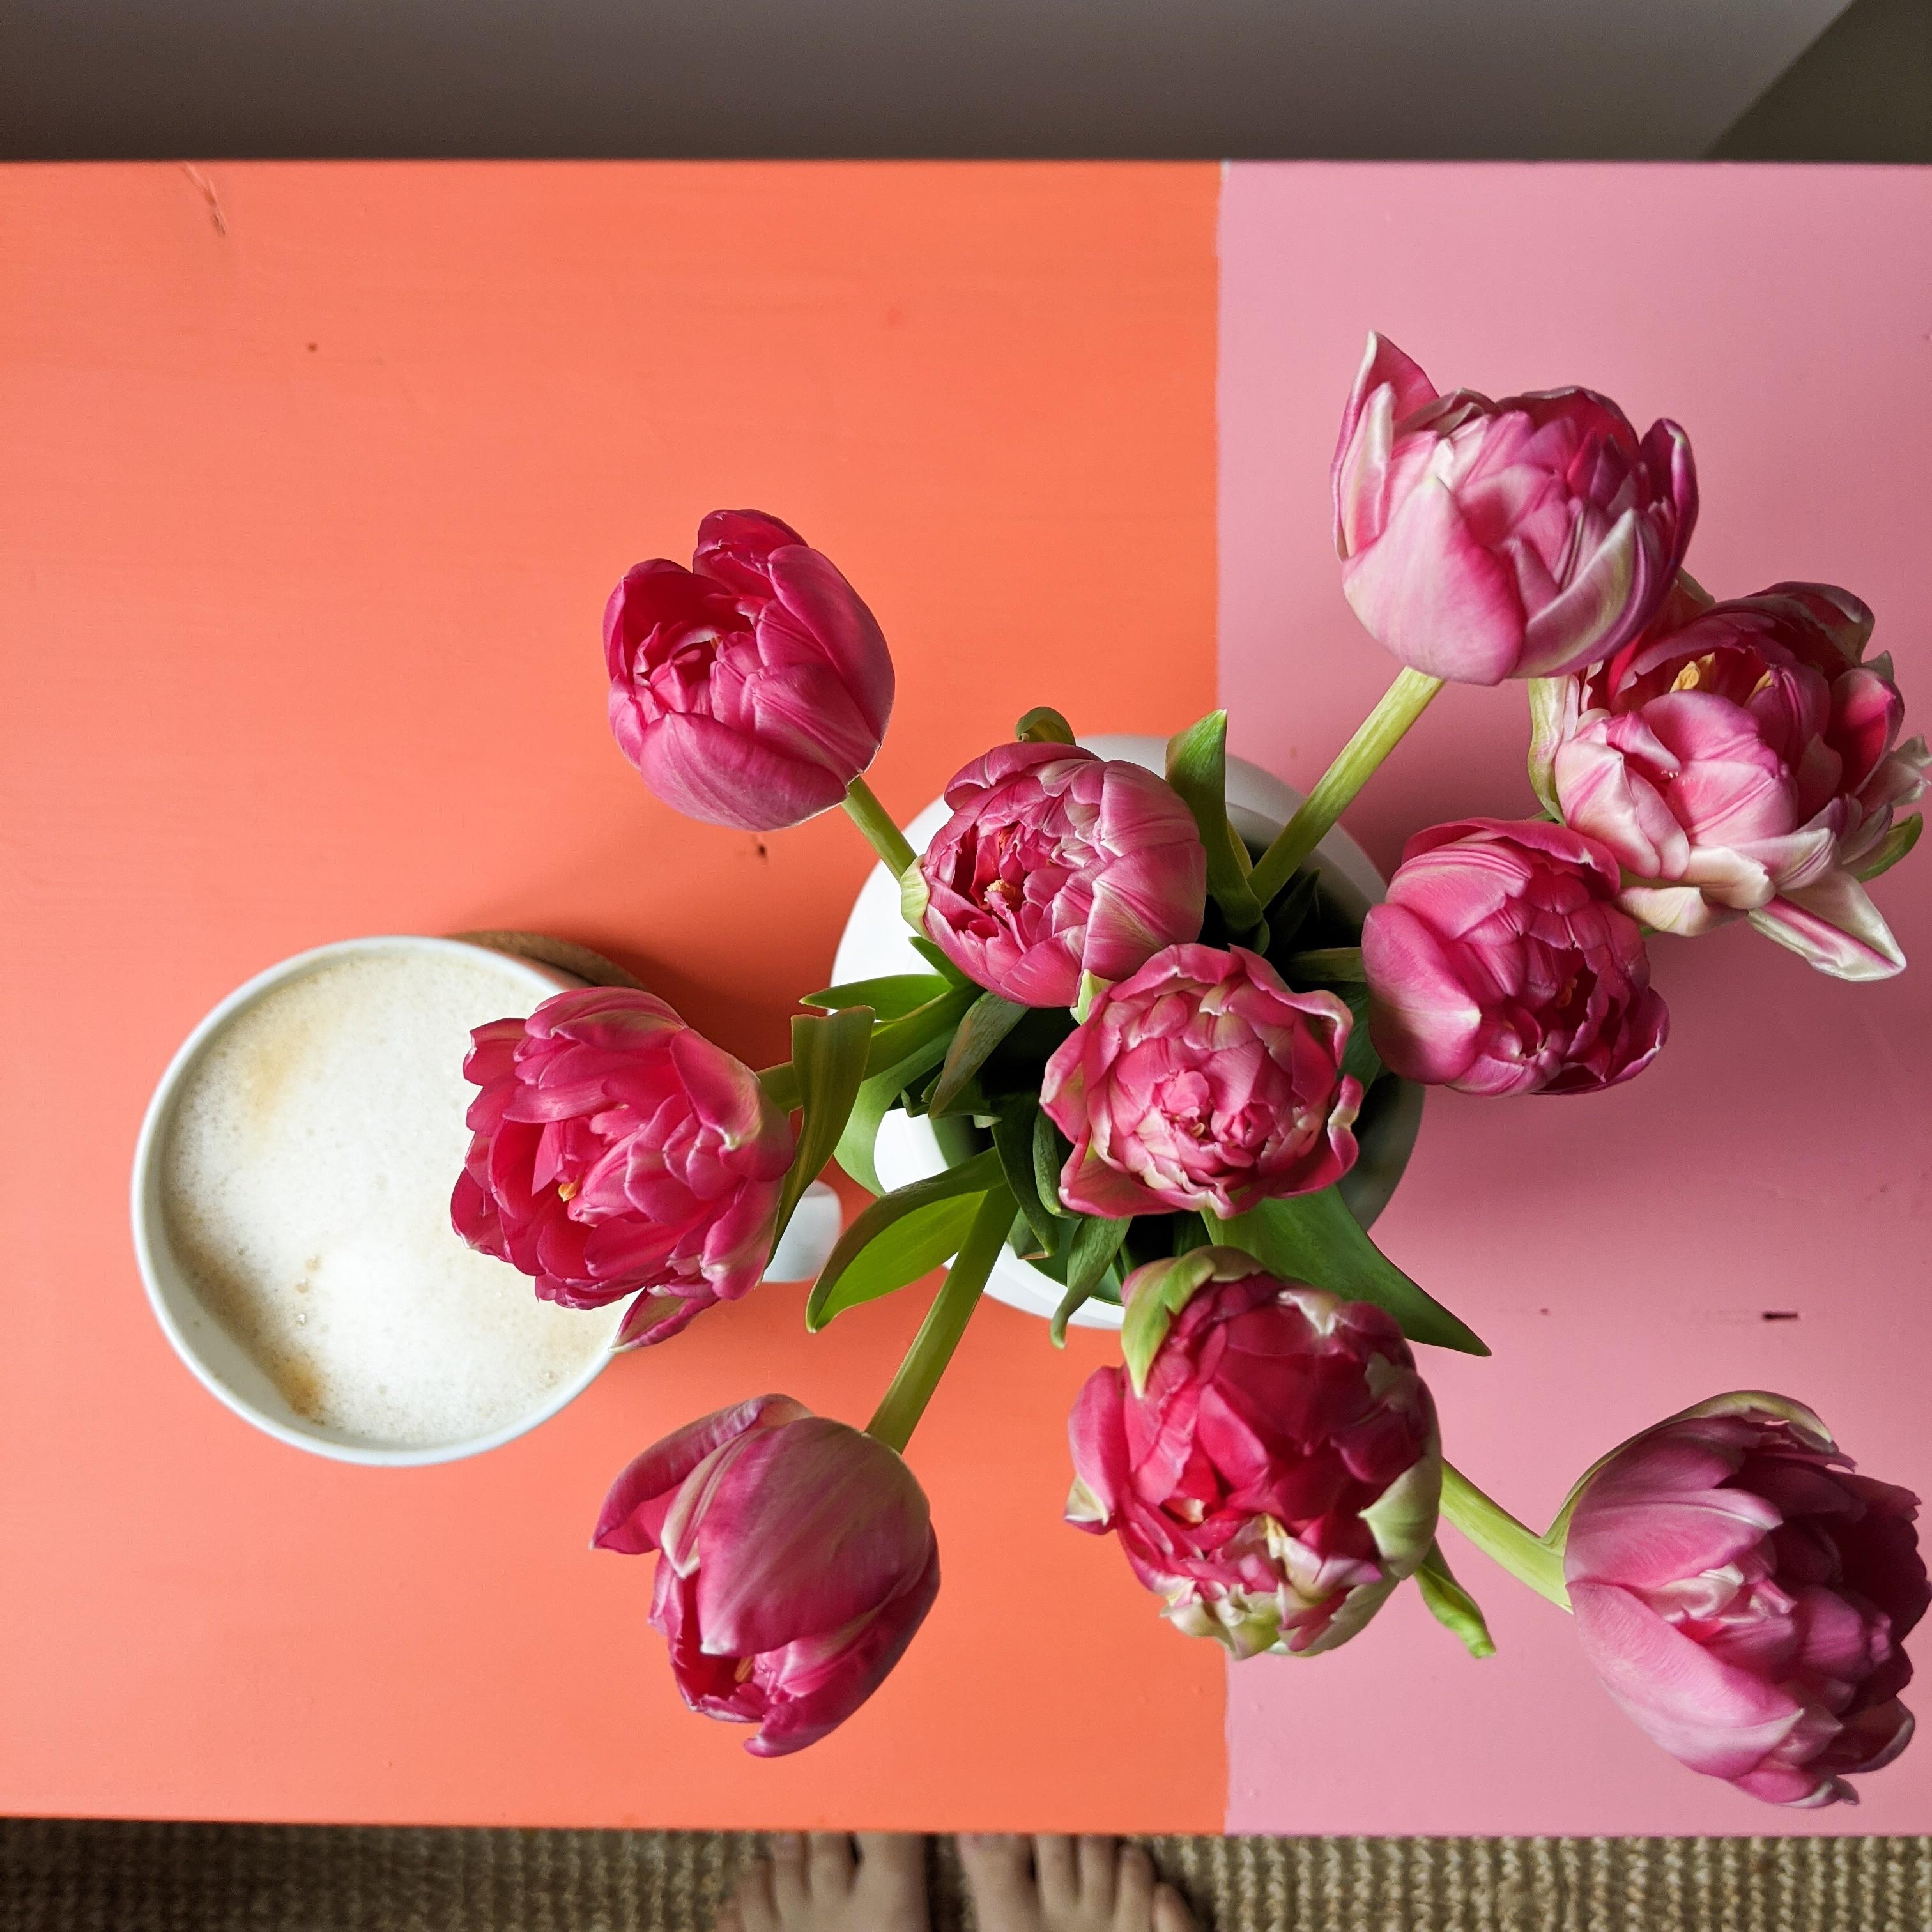 Farbpower gegen Graue Tage! BÄÄÄMMM!
#farbe #tulpen #kaffee #diy #handmade #bunt #orange #rosa